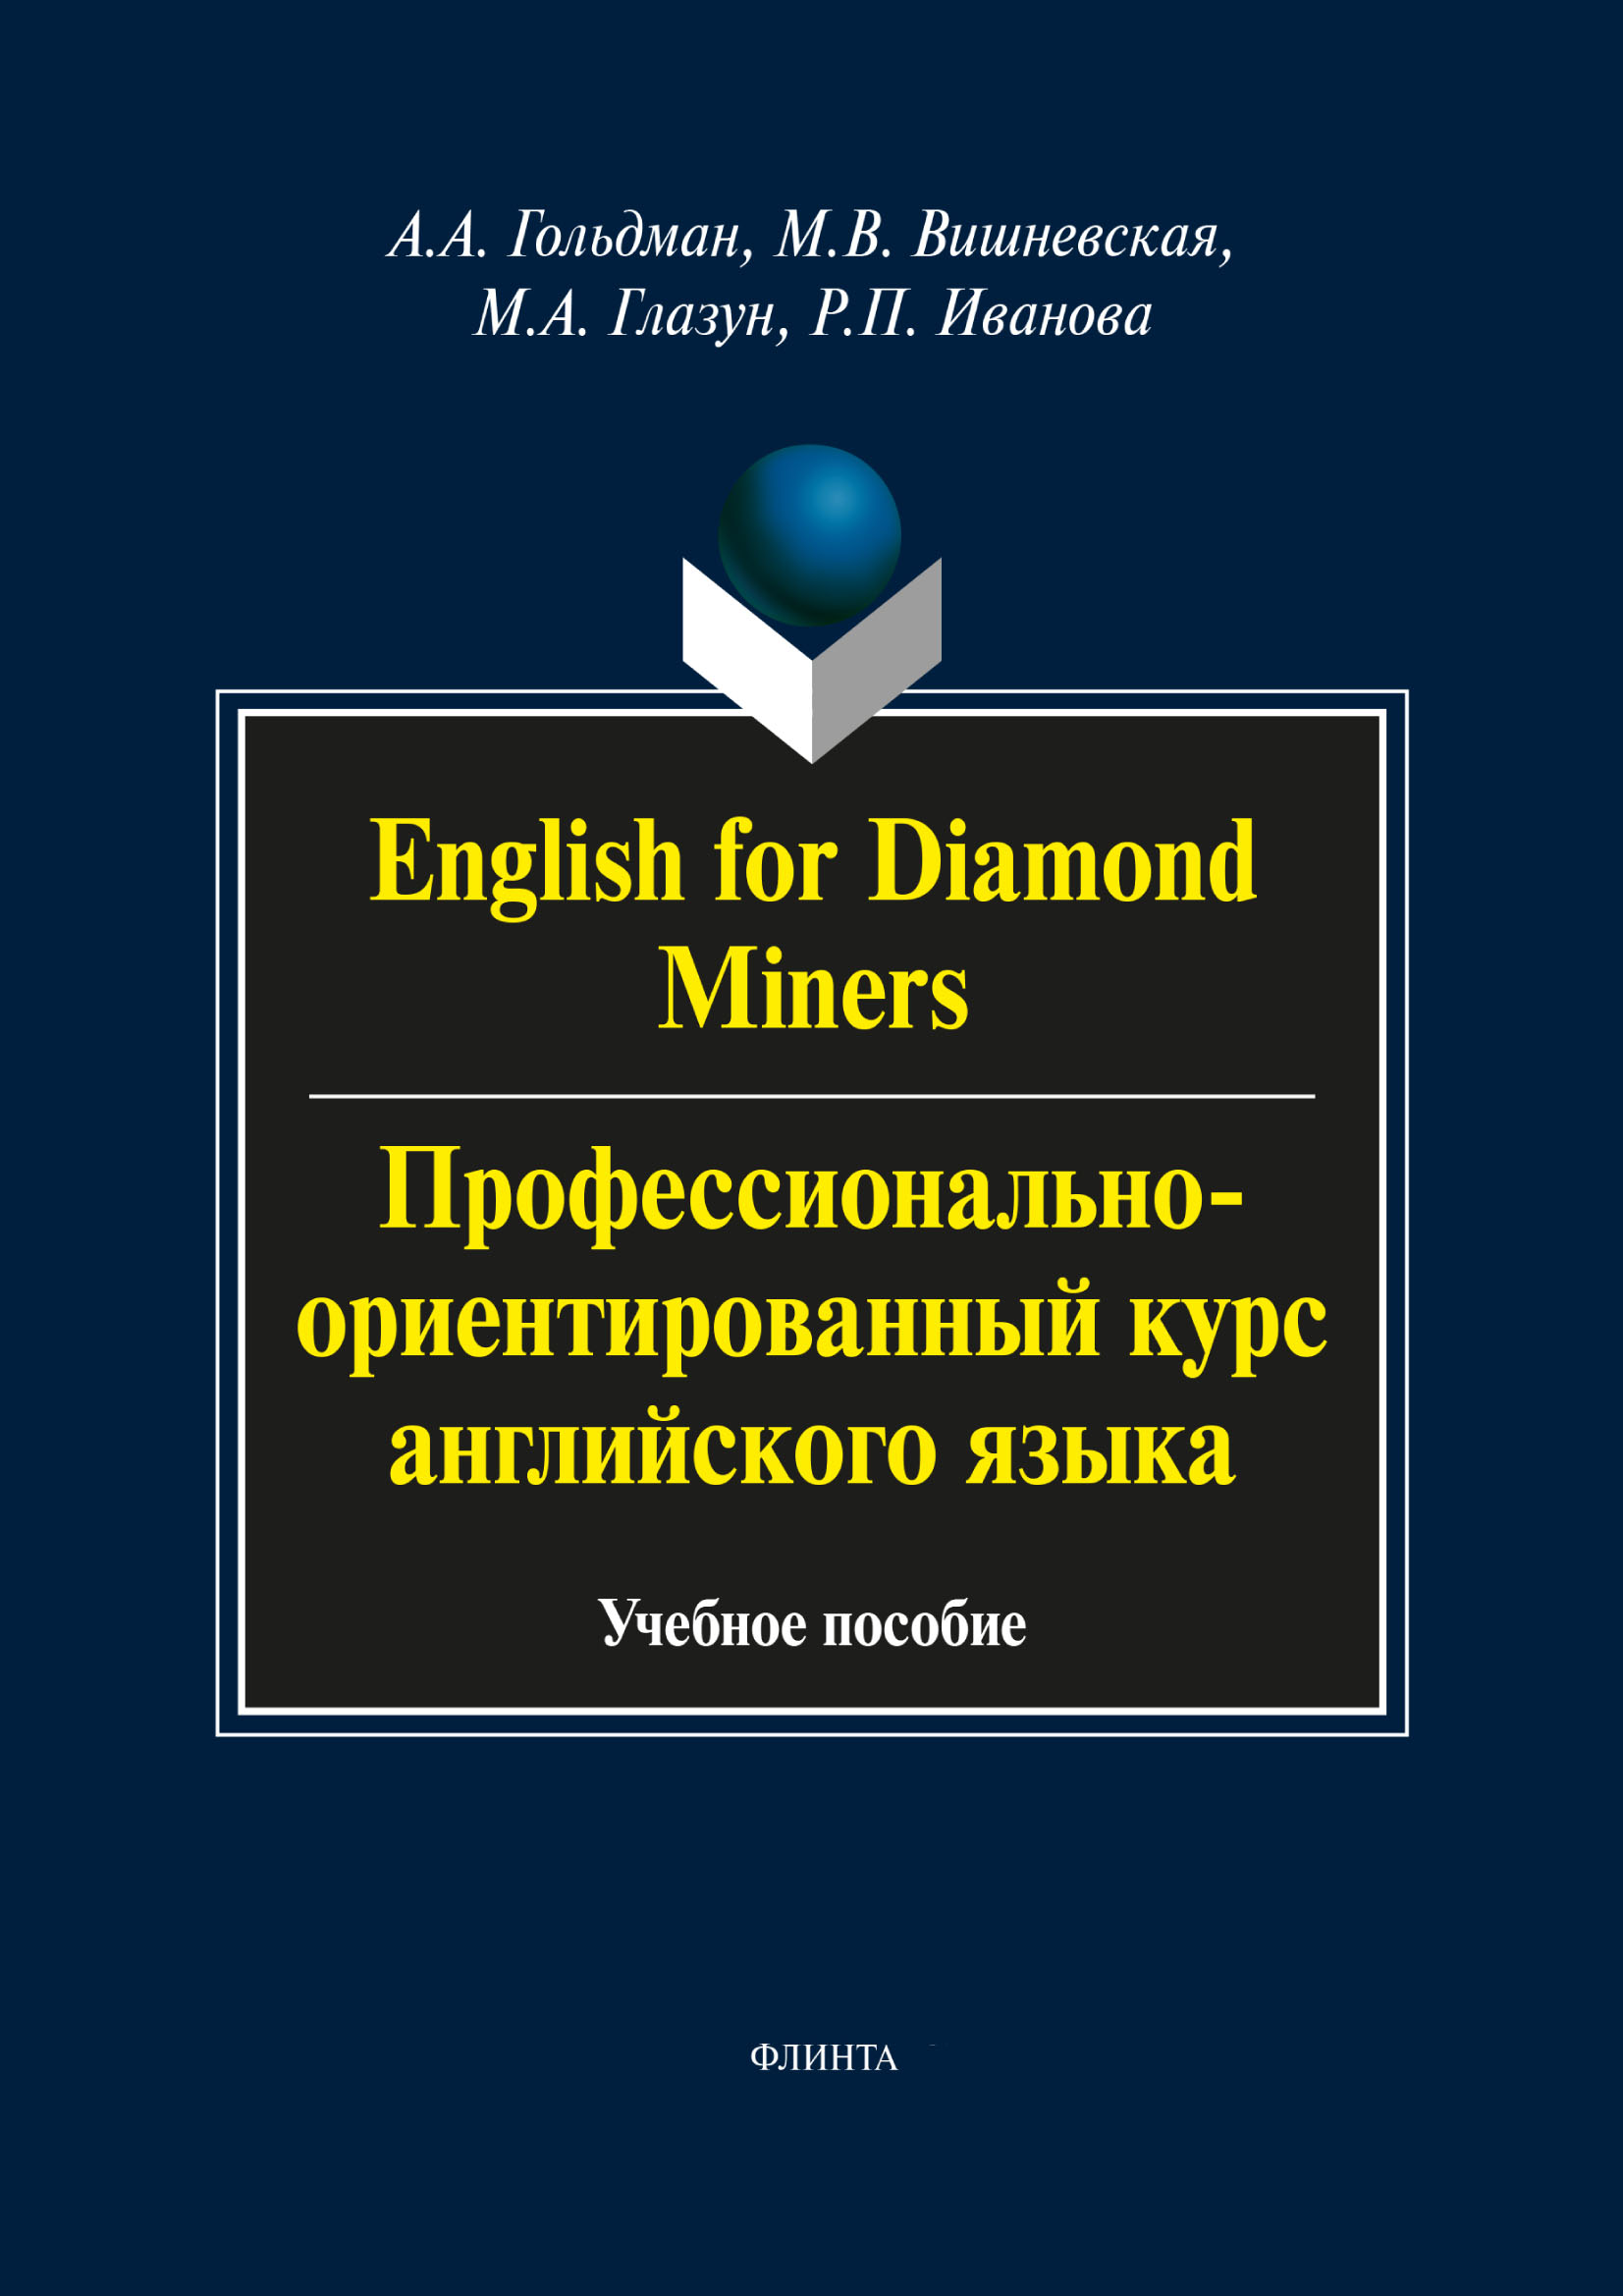 English for Diamond Miners /Профессионально-ориентированный курс английского языка. Учебное пособие